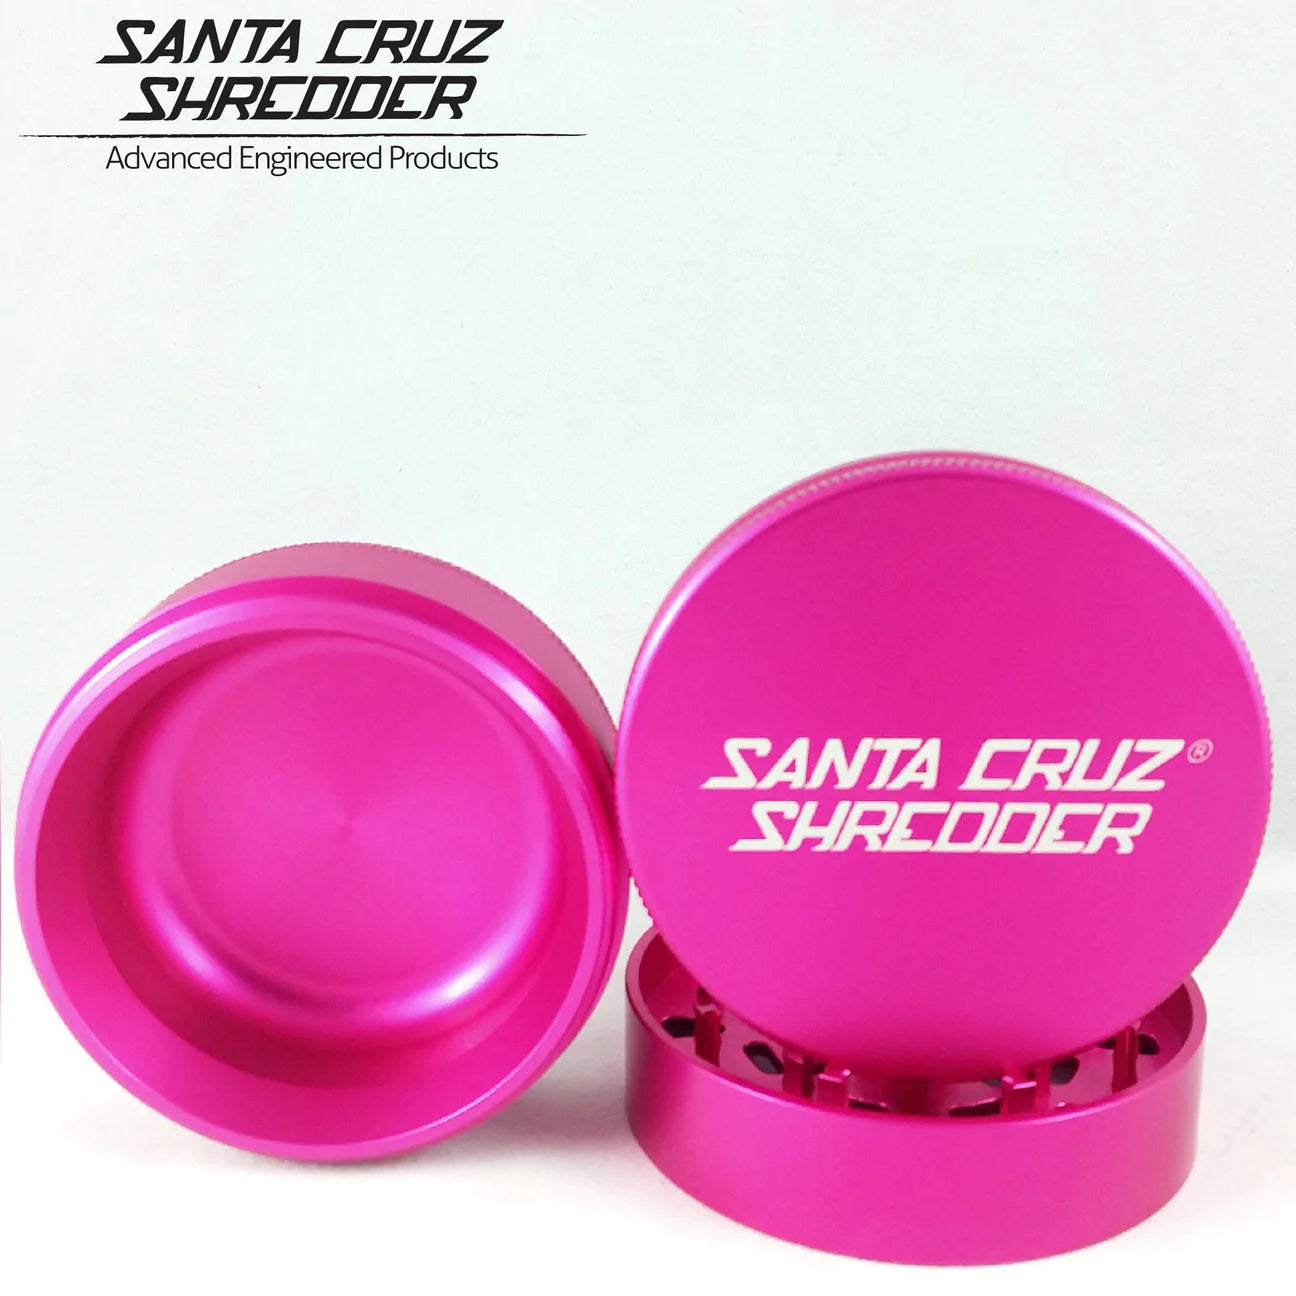 Santa Cruz Shredder Medium 3pc Grinder